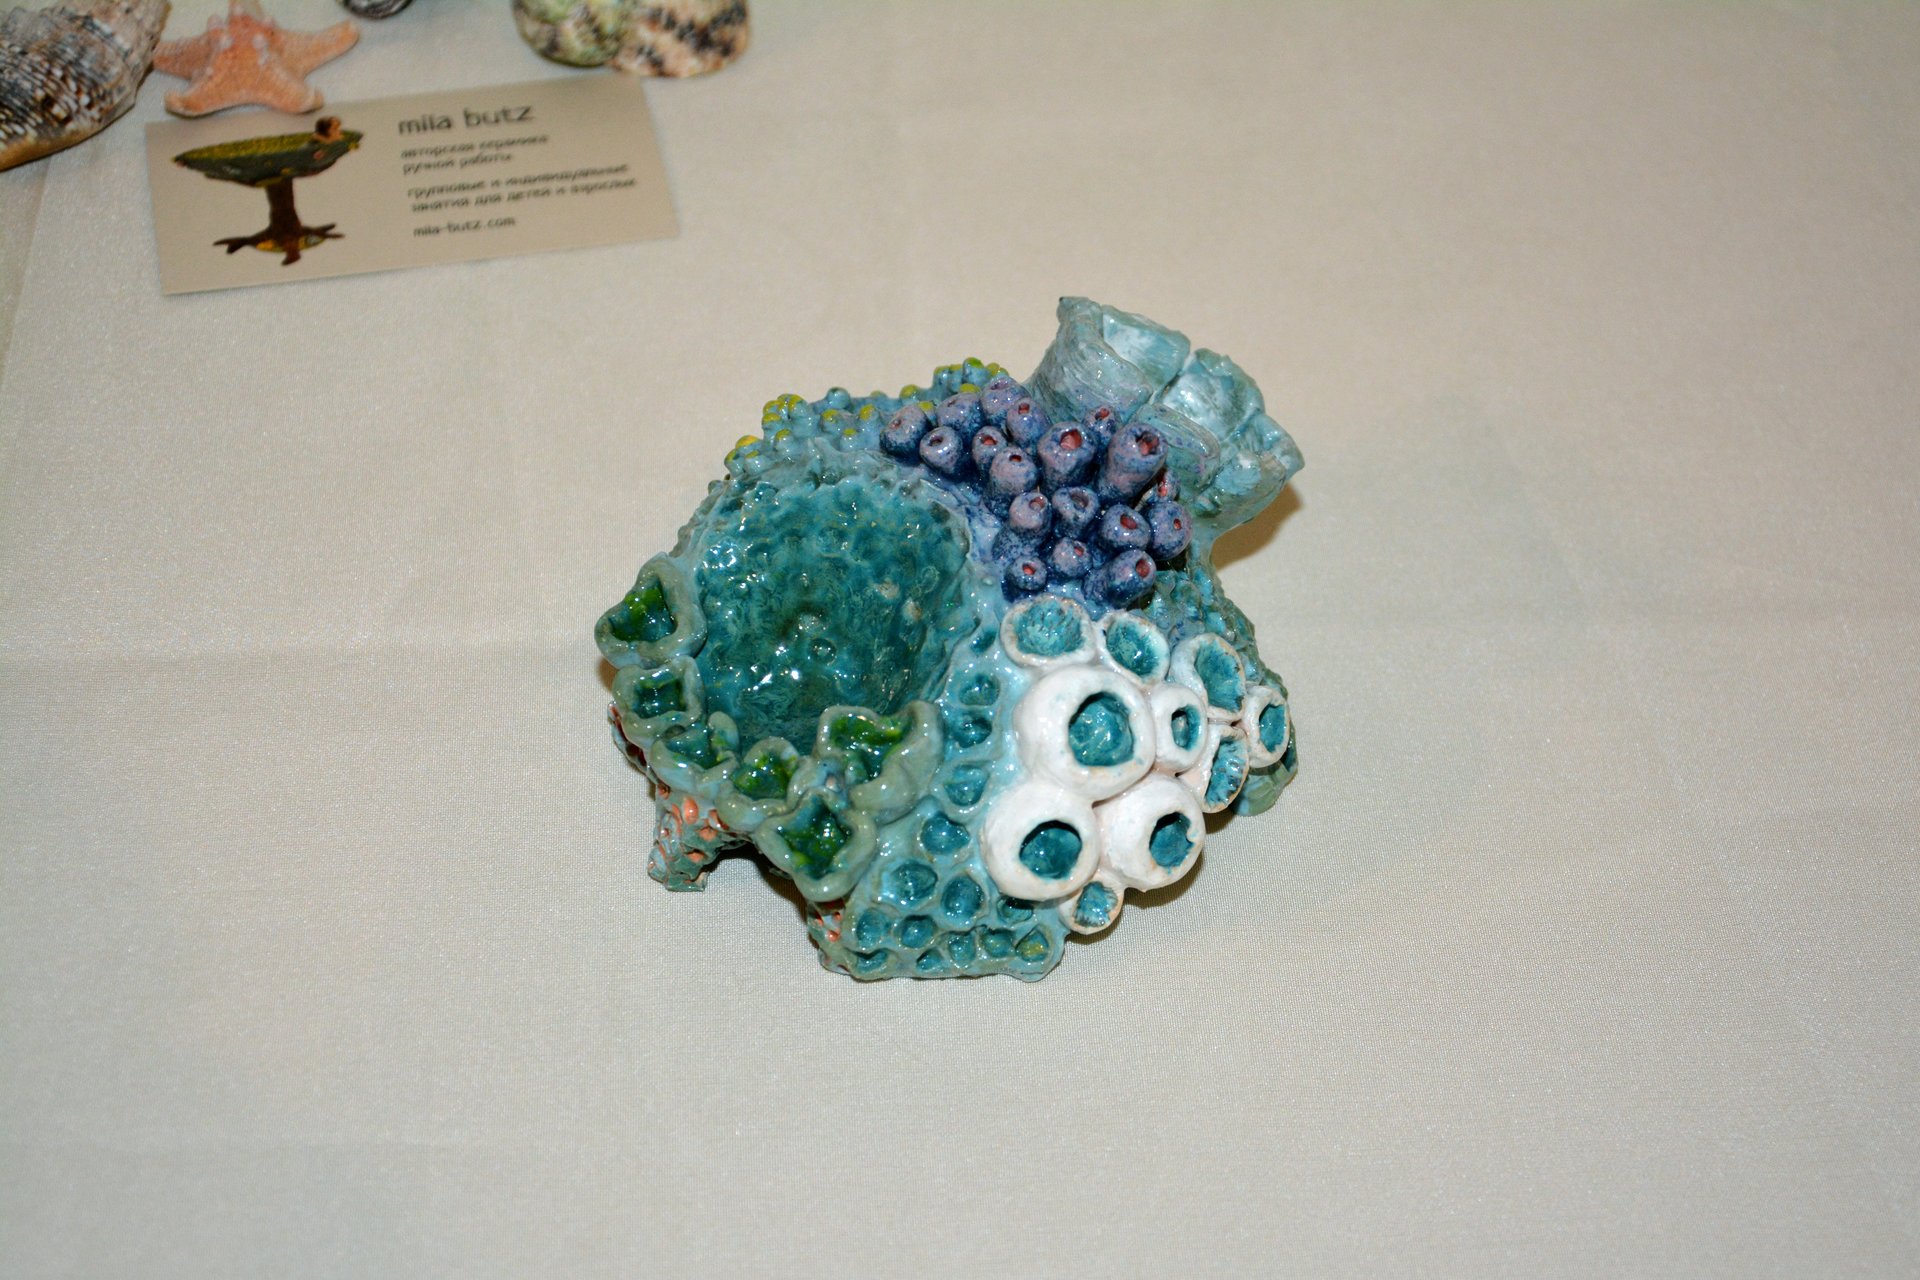 Коралл IV - Для аквариумов керамика, ширина - 11 см, высота - 7 см, фото 6 из 6.